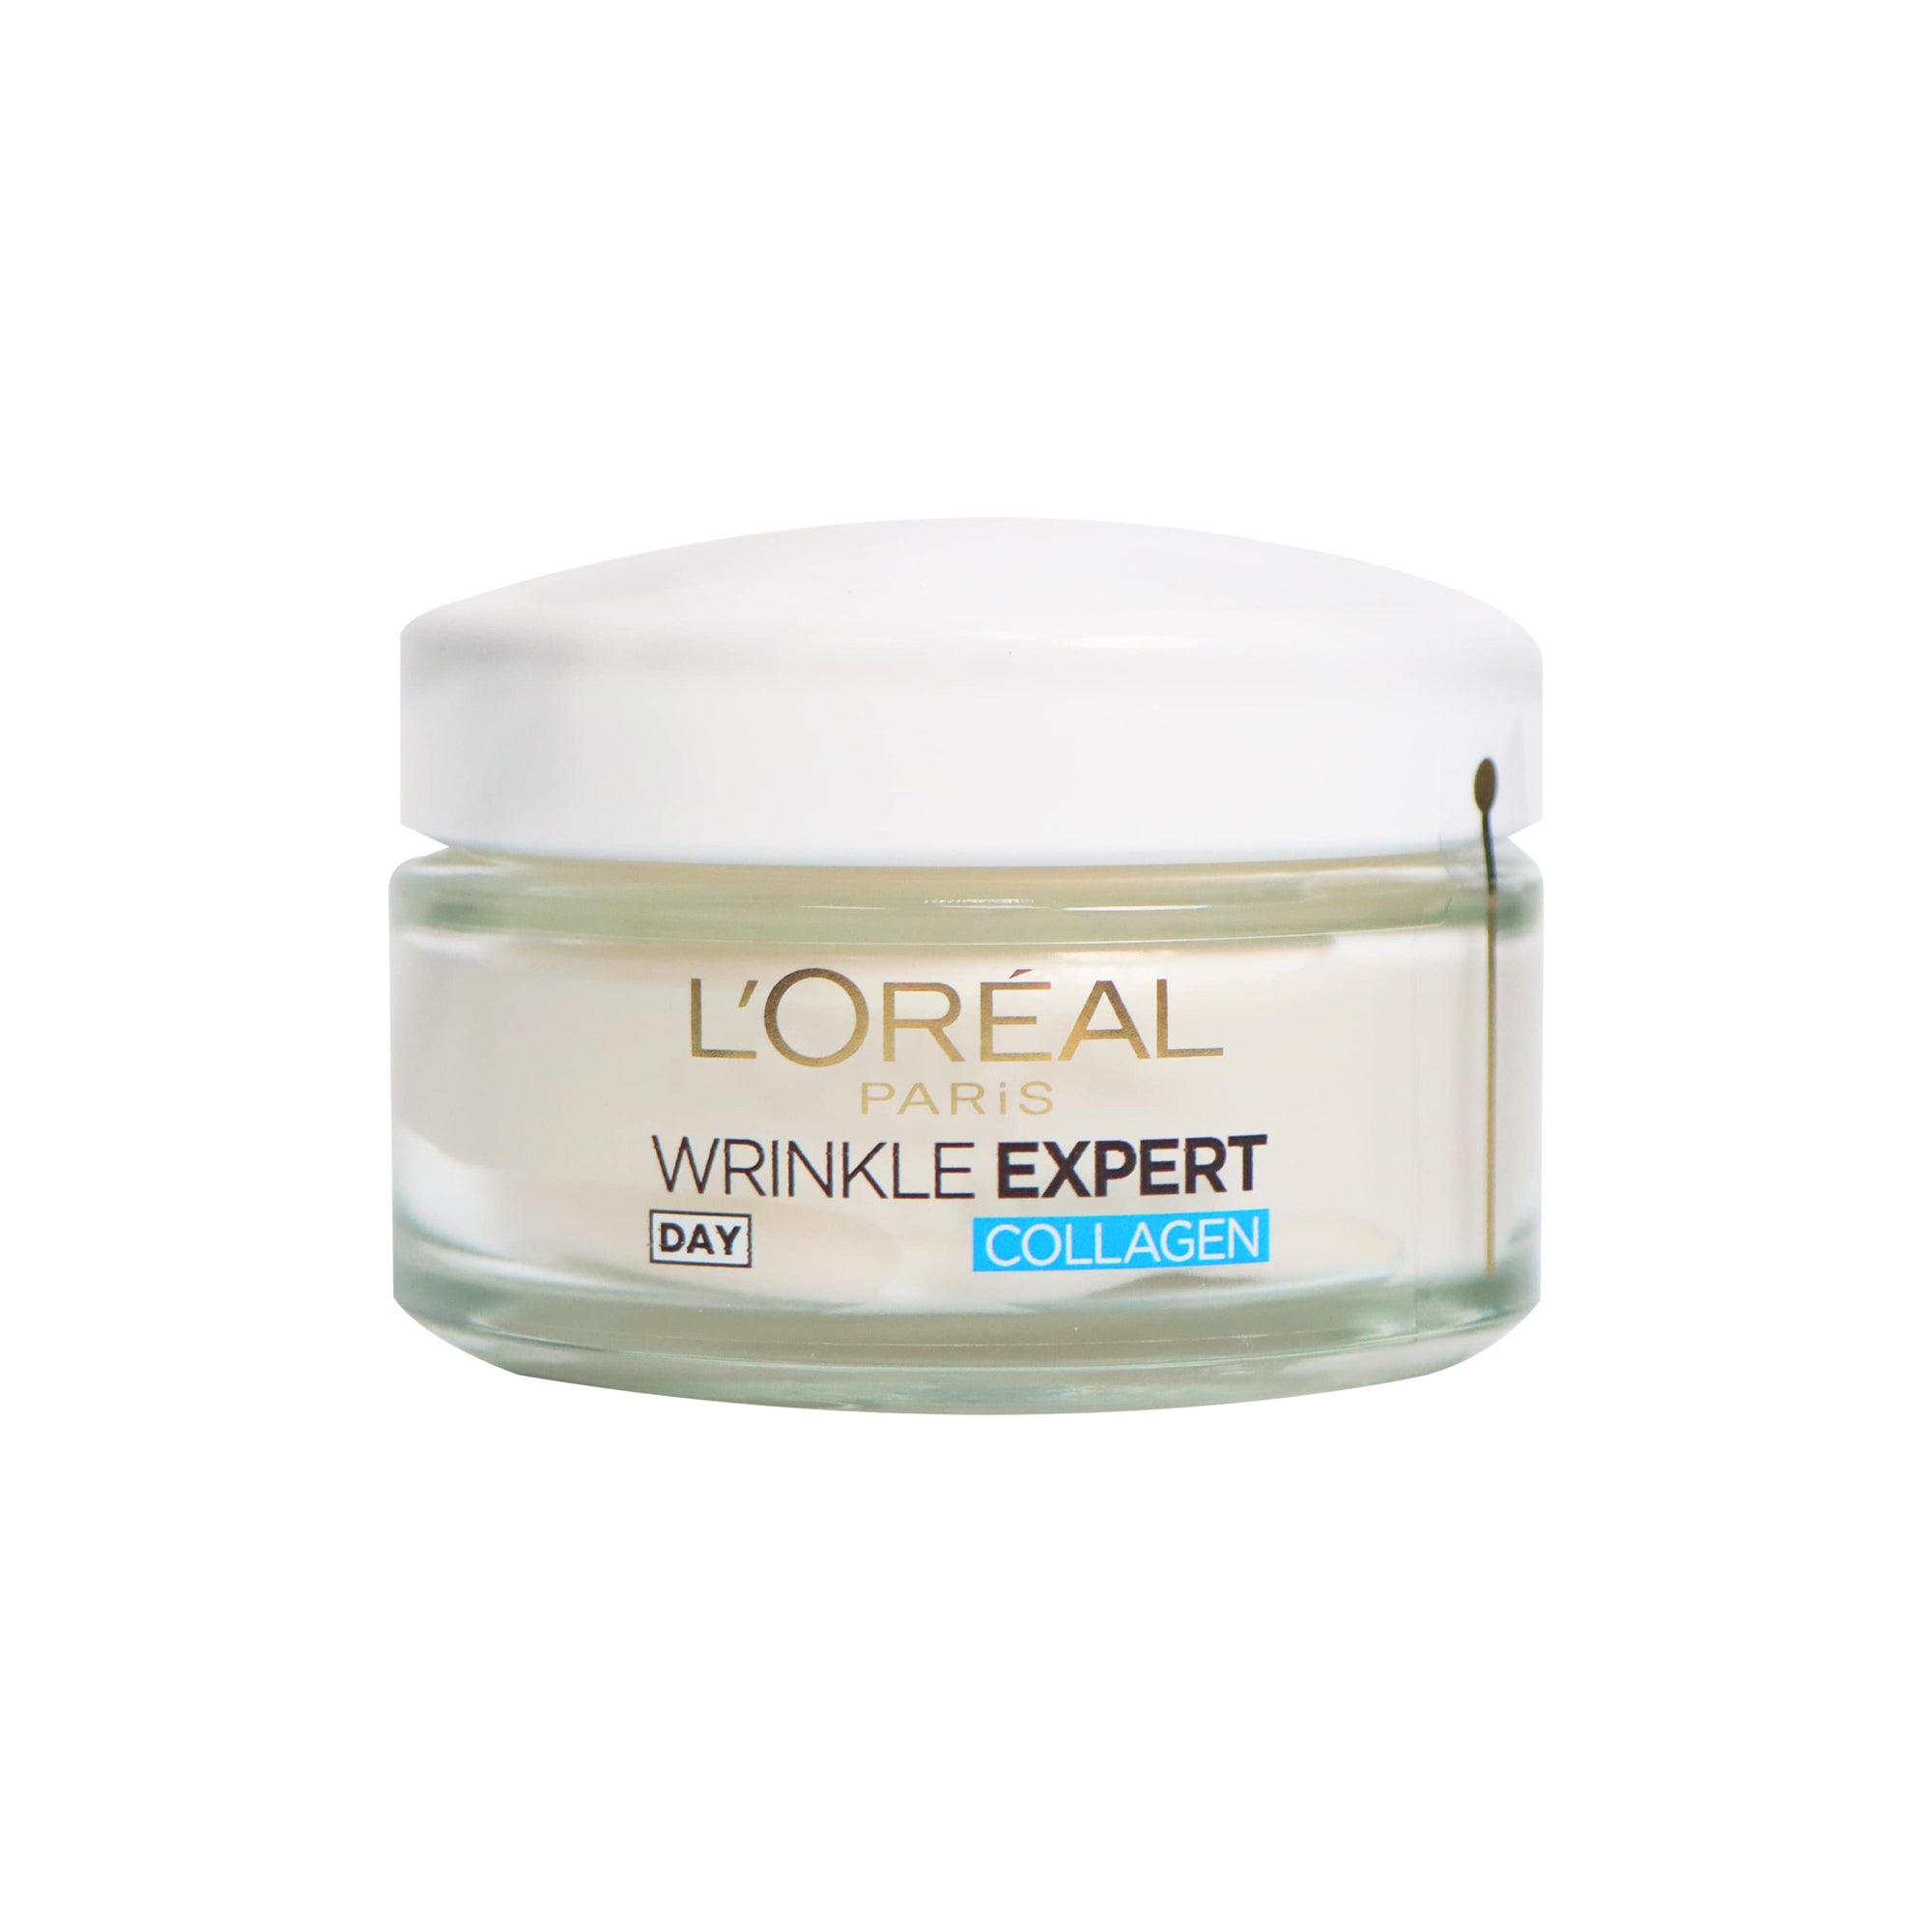 L'Oréal Paris Wrinkle Expert 35+ Face Moisturizer 50ml